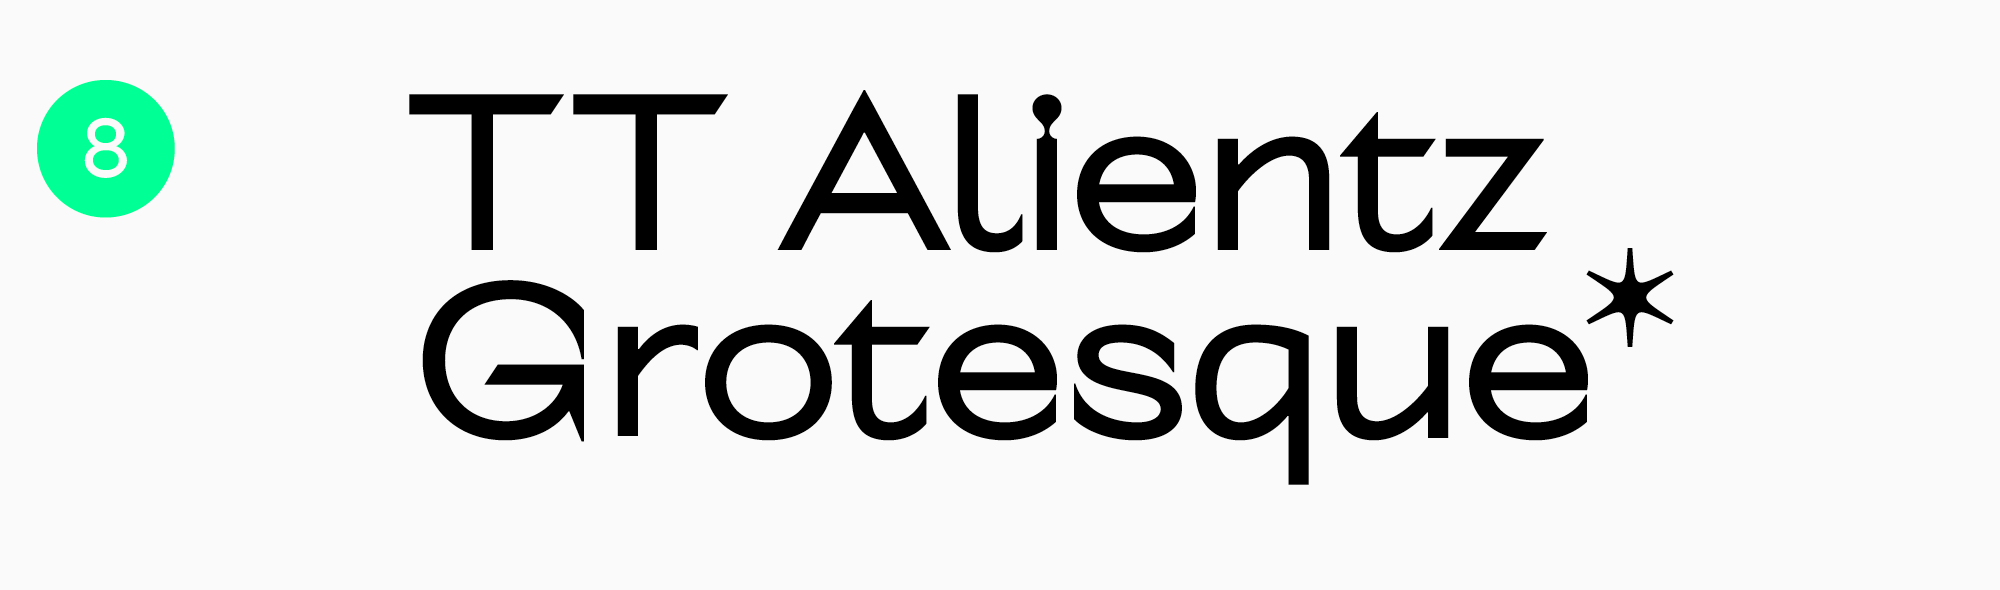 TT Alientz Grotesque Best slab-serif font for logo